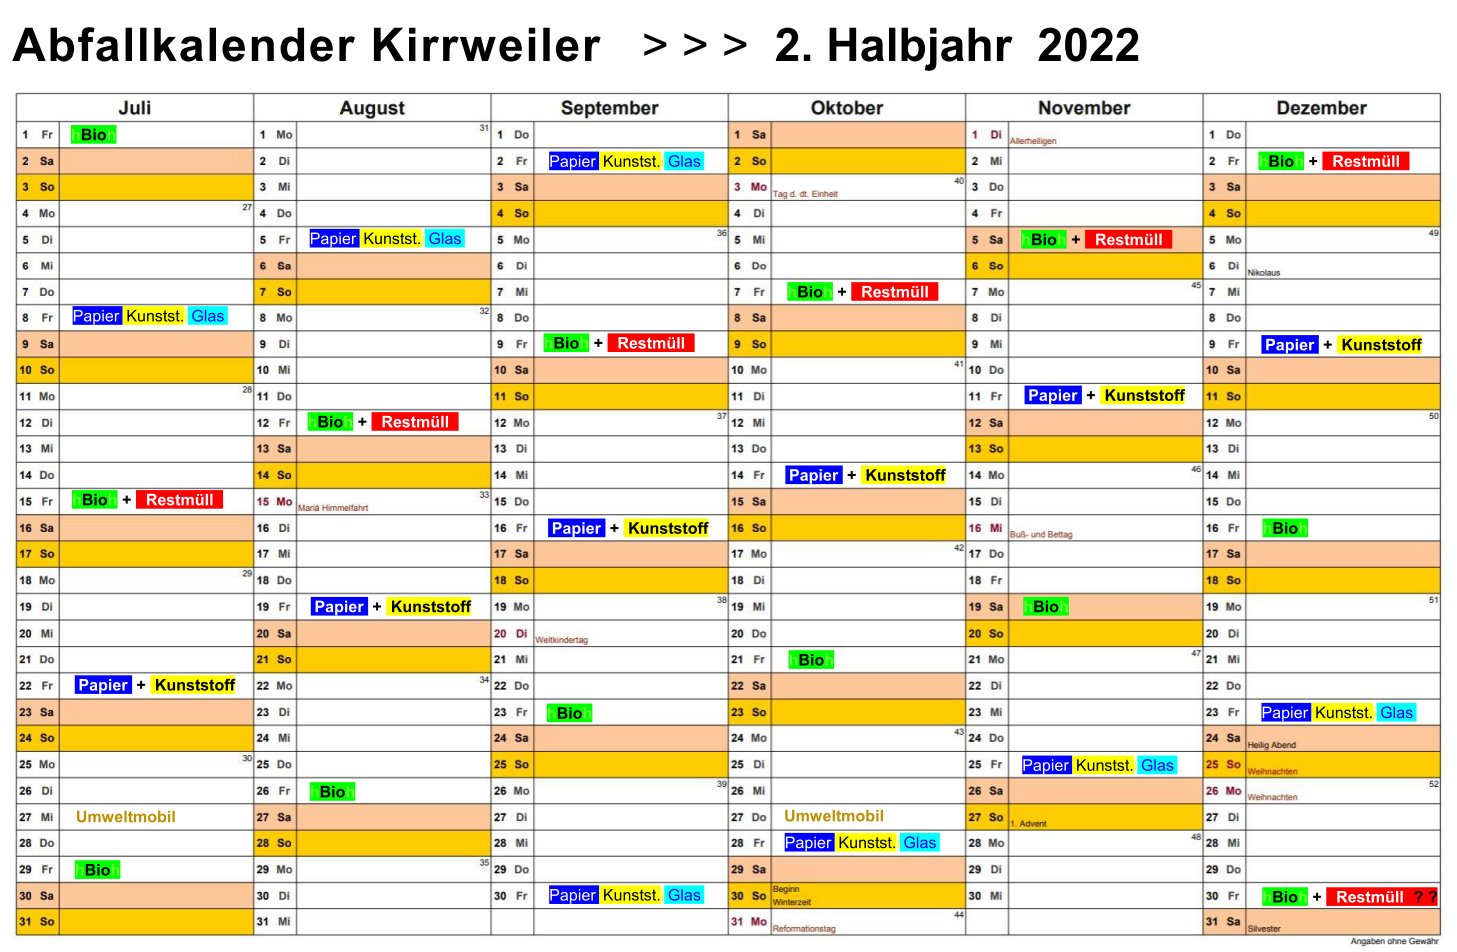 Ablage/Abfallkalender_Kirrweiler_2-Halbjahr_2022.pdf